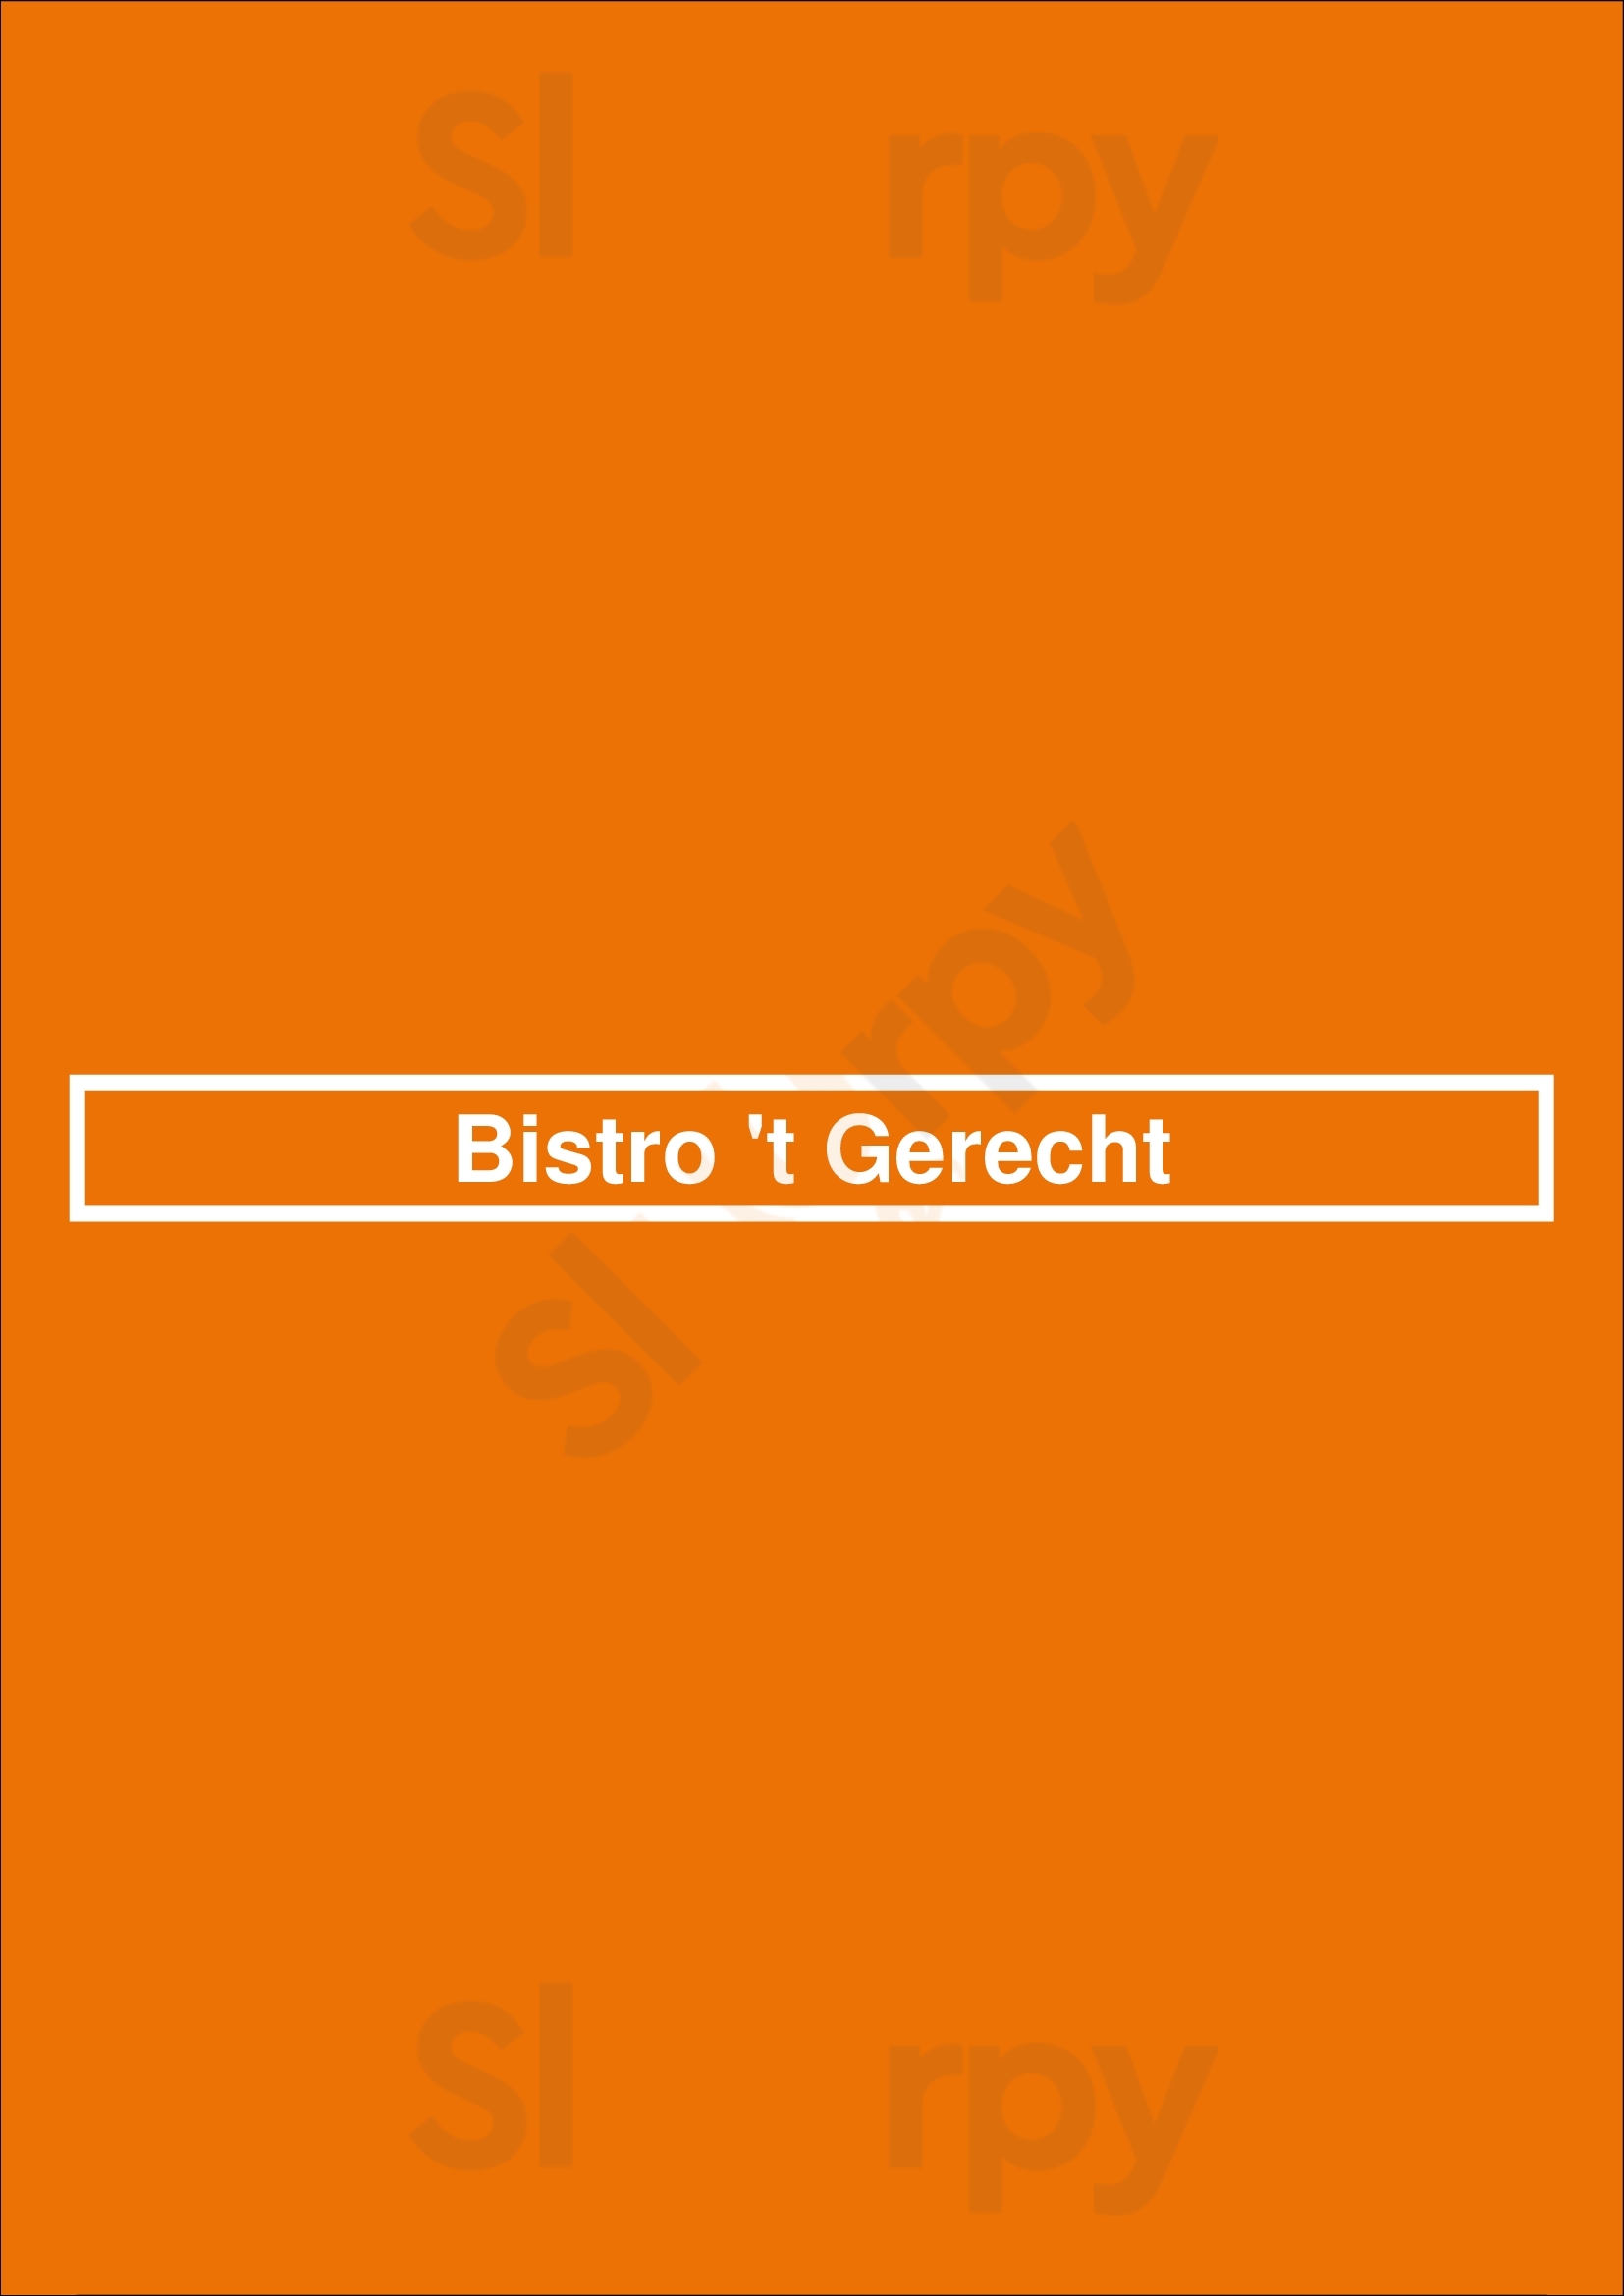 Bistro 't Gerecht Groningen Menu - 1